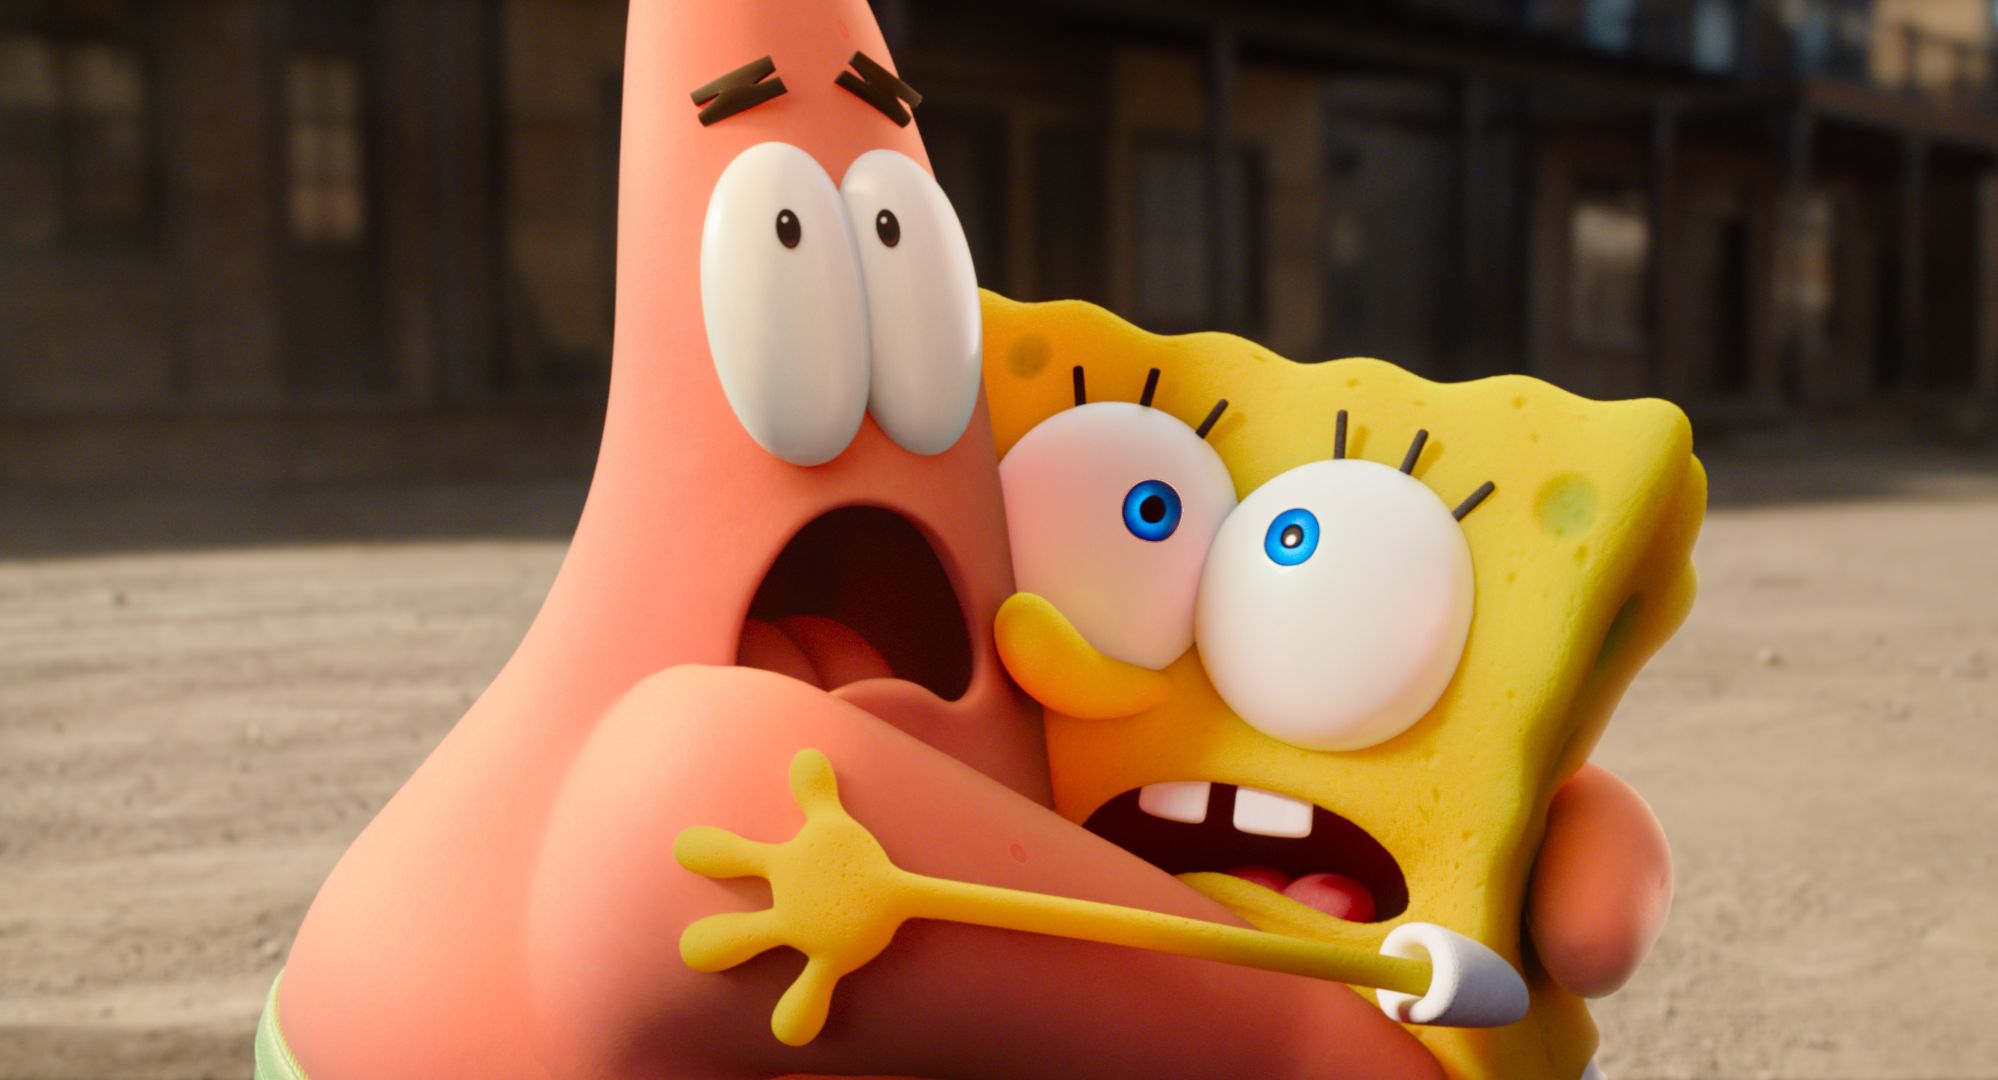  SpongeBob SquarePants: Lost in Time : Tom Kenny, Bill